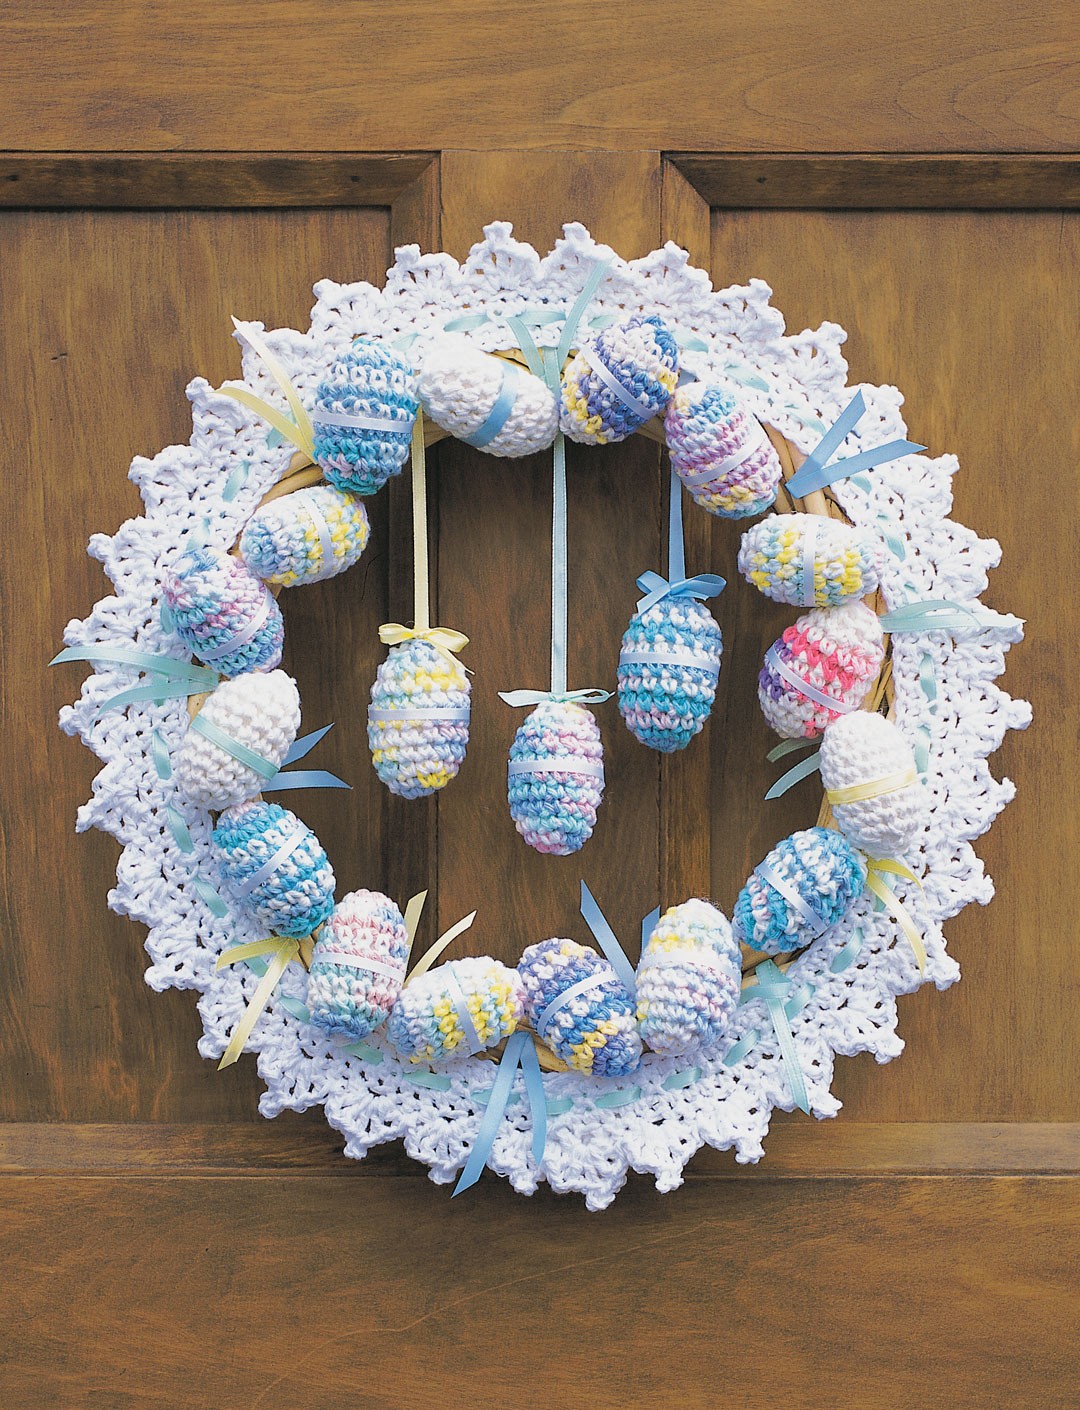 Crochet Happy Easter Wreath Free Pattern